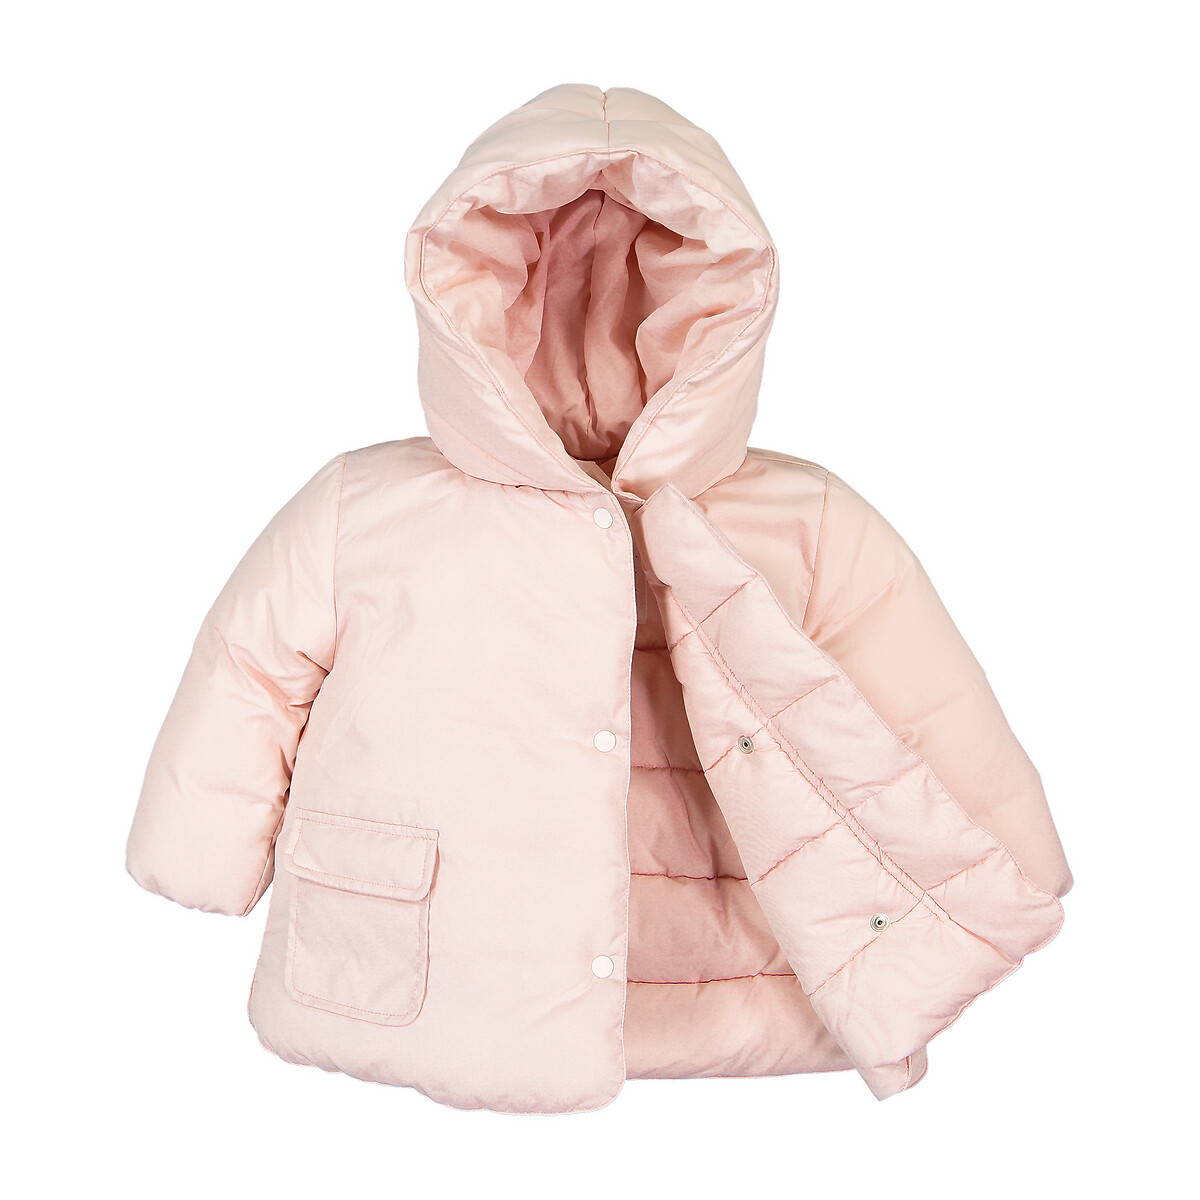 Куртка La Redoute Стеганая утепленная с капюшоном 3 мес-4 года 6 мес. - 67 см розовый, размер 6 мес. - 67 см - фото 3